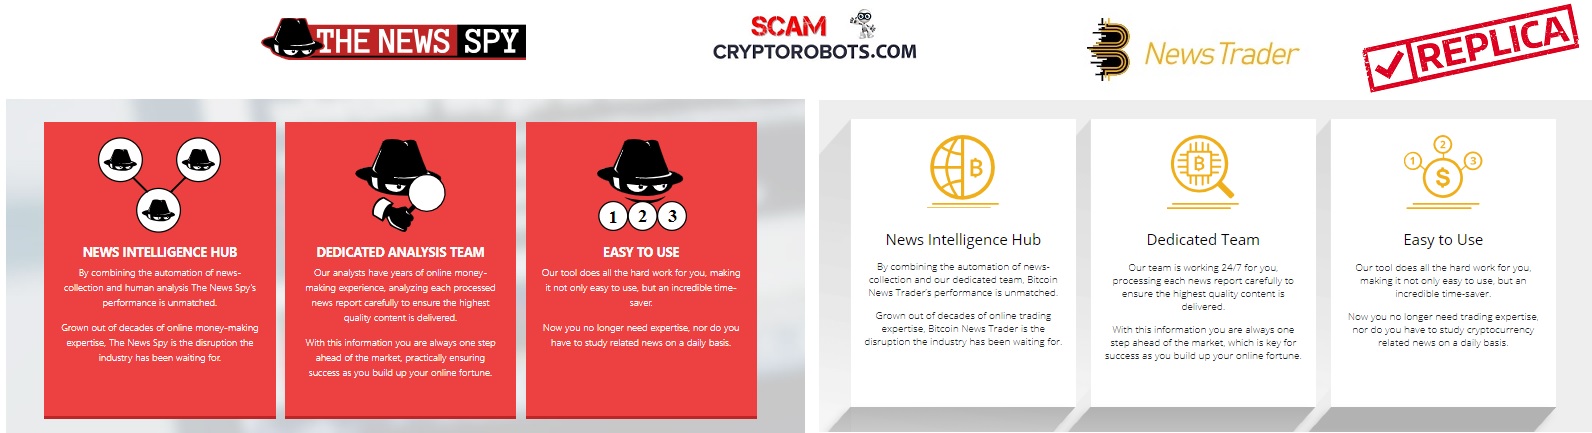 bitcoin news trader scam)